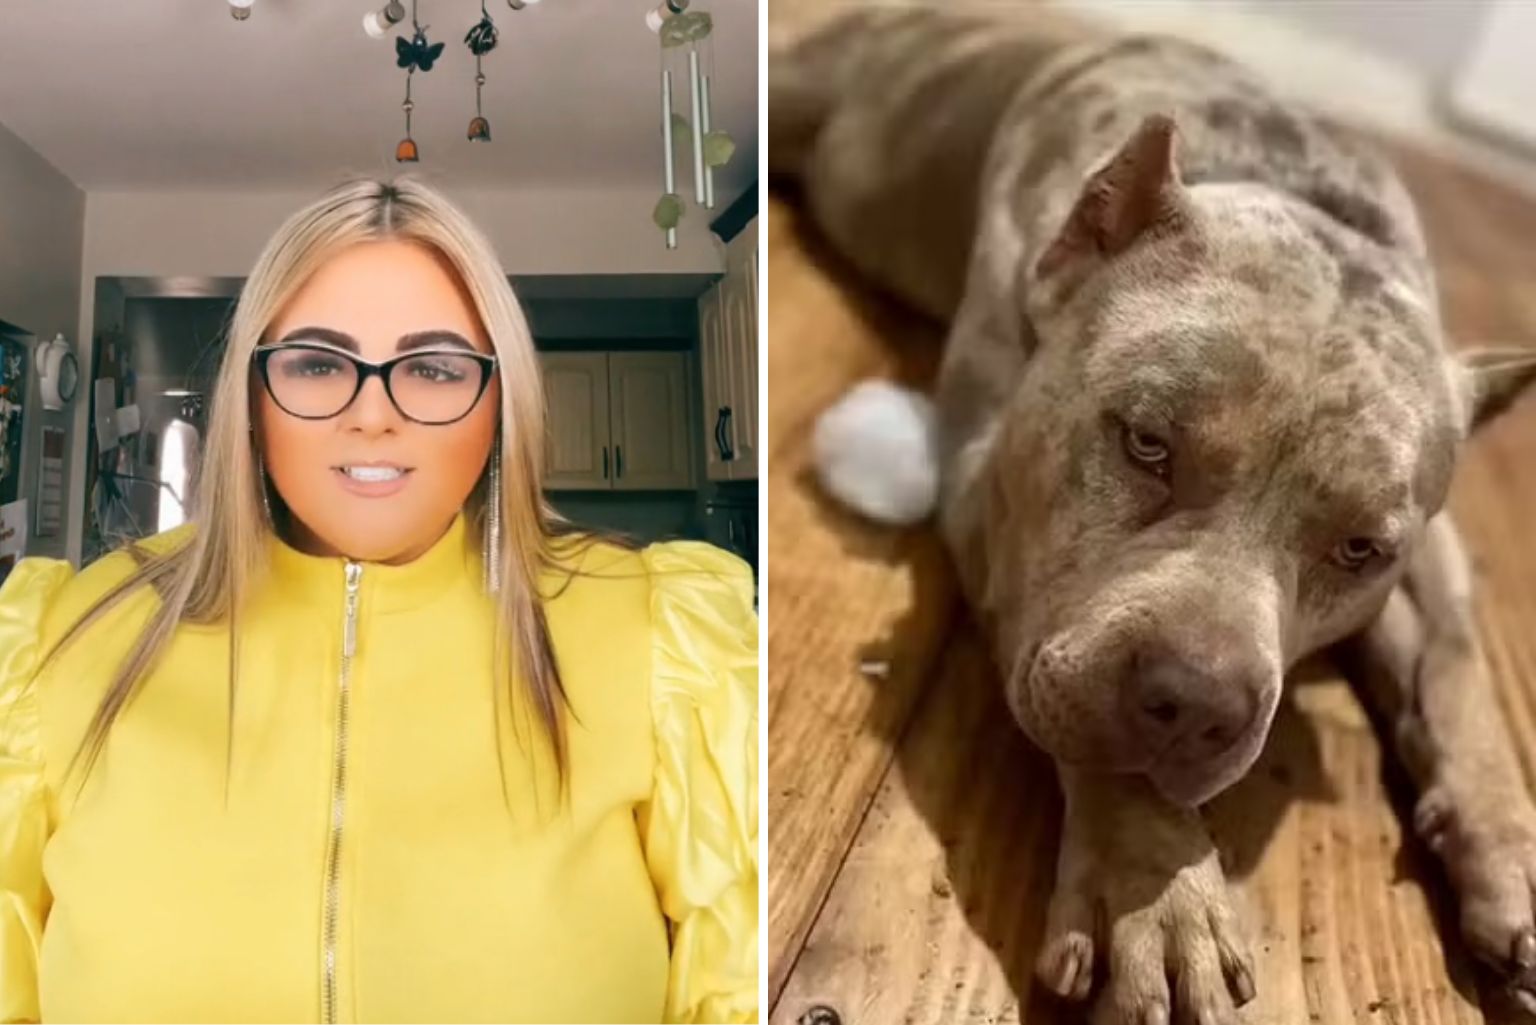 Mulher Perde Um Braço E Morre Após Ataque De Seus Cães De Raça Conhecida Com &Quot;Mortal&Quot; No Reino Unido; Veja O Vídeo